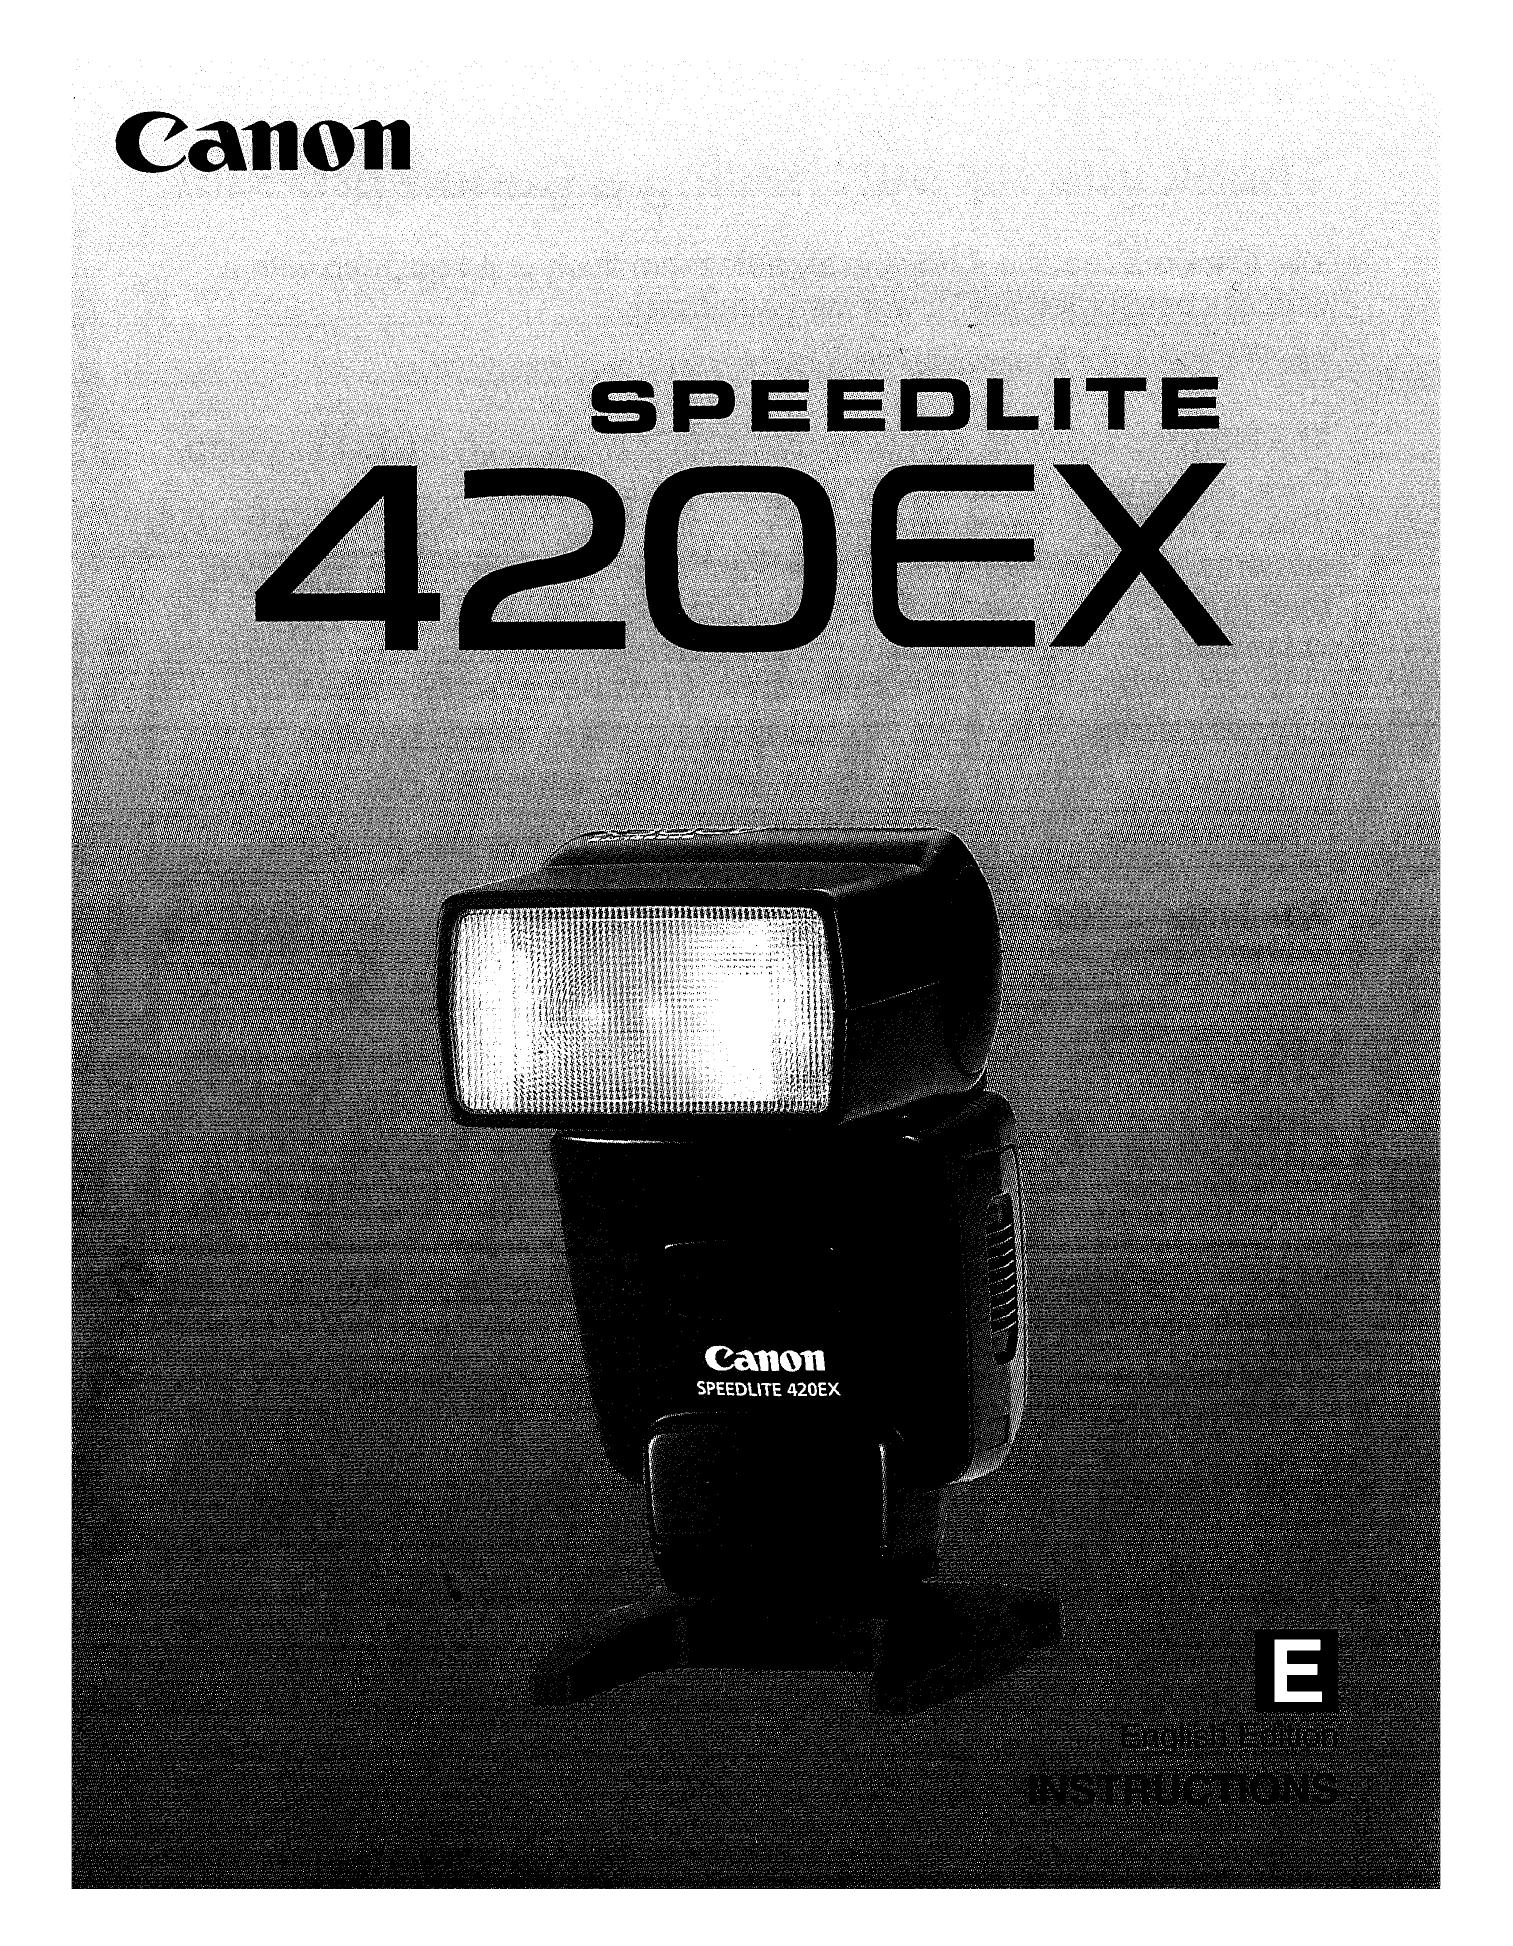 Canon 420EX Camera Flash User Manual